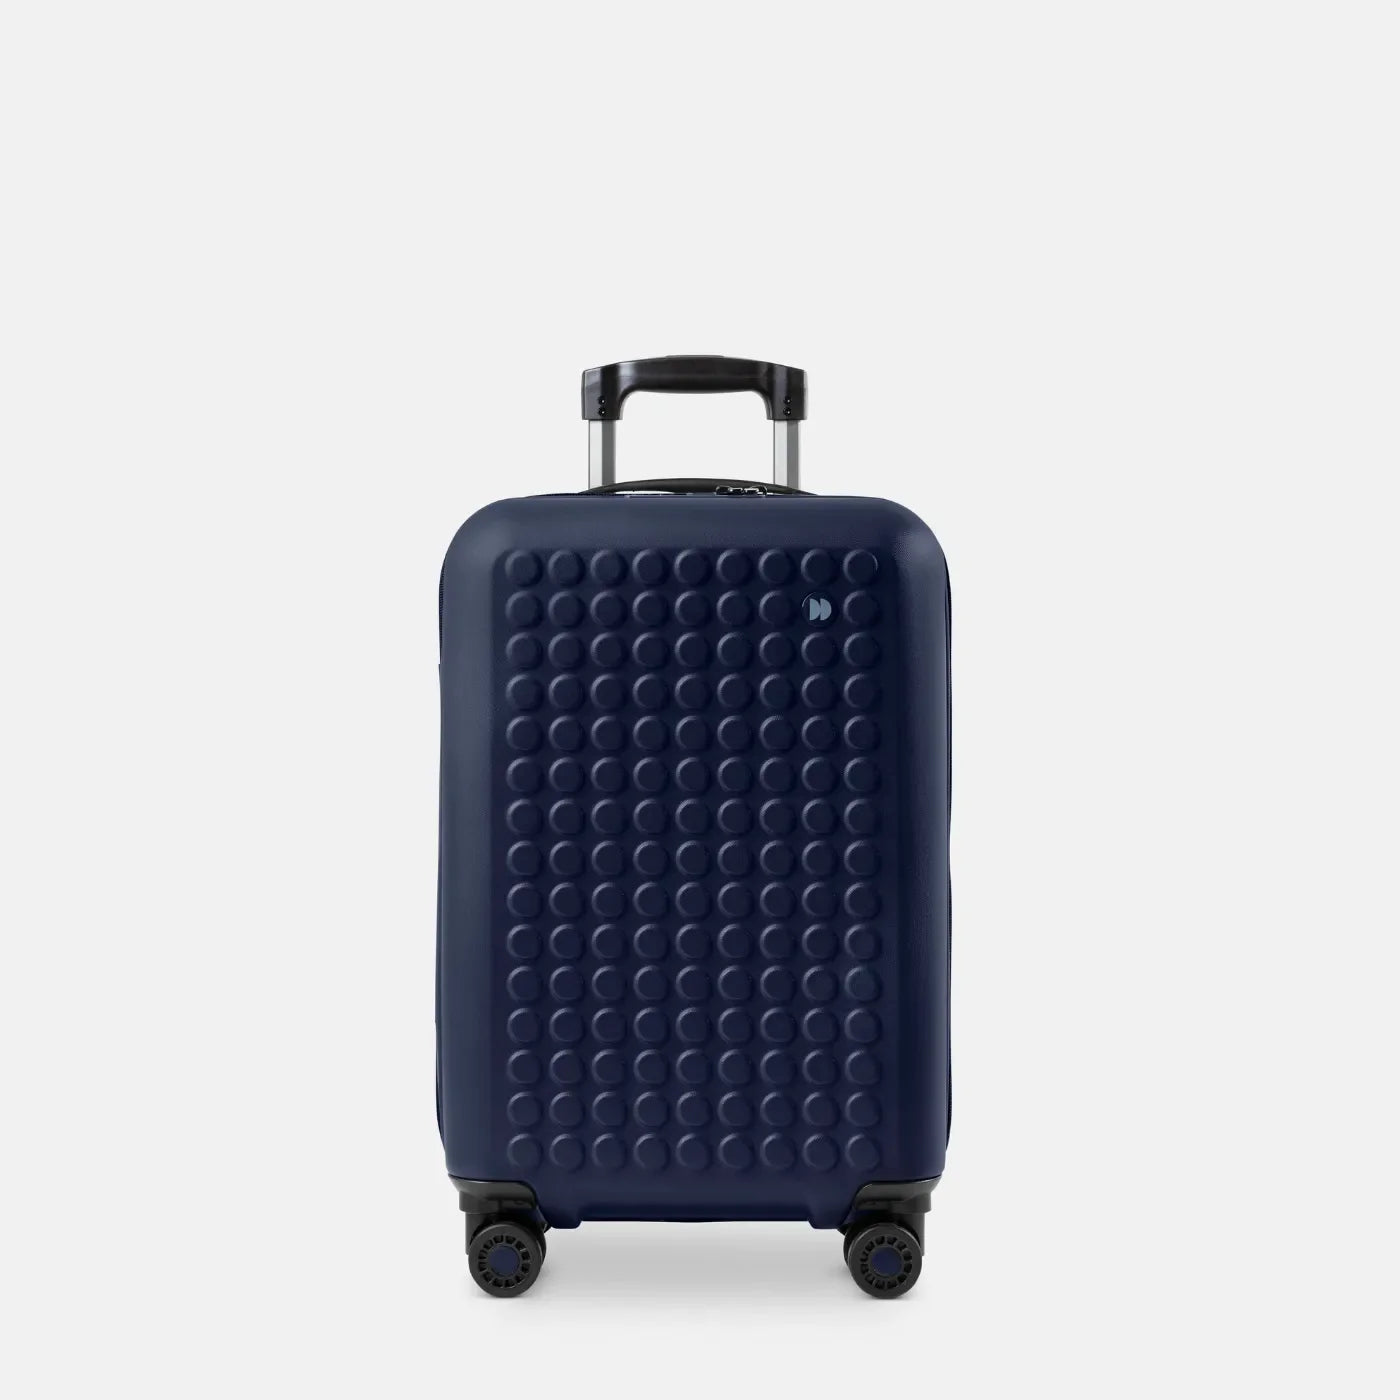 Trouvez la meilleure valise de voyage - Valise de voyage